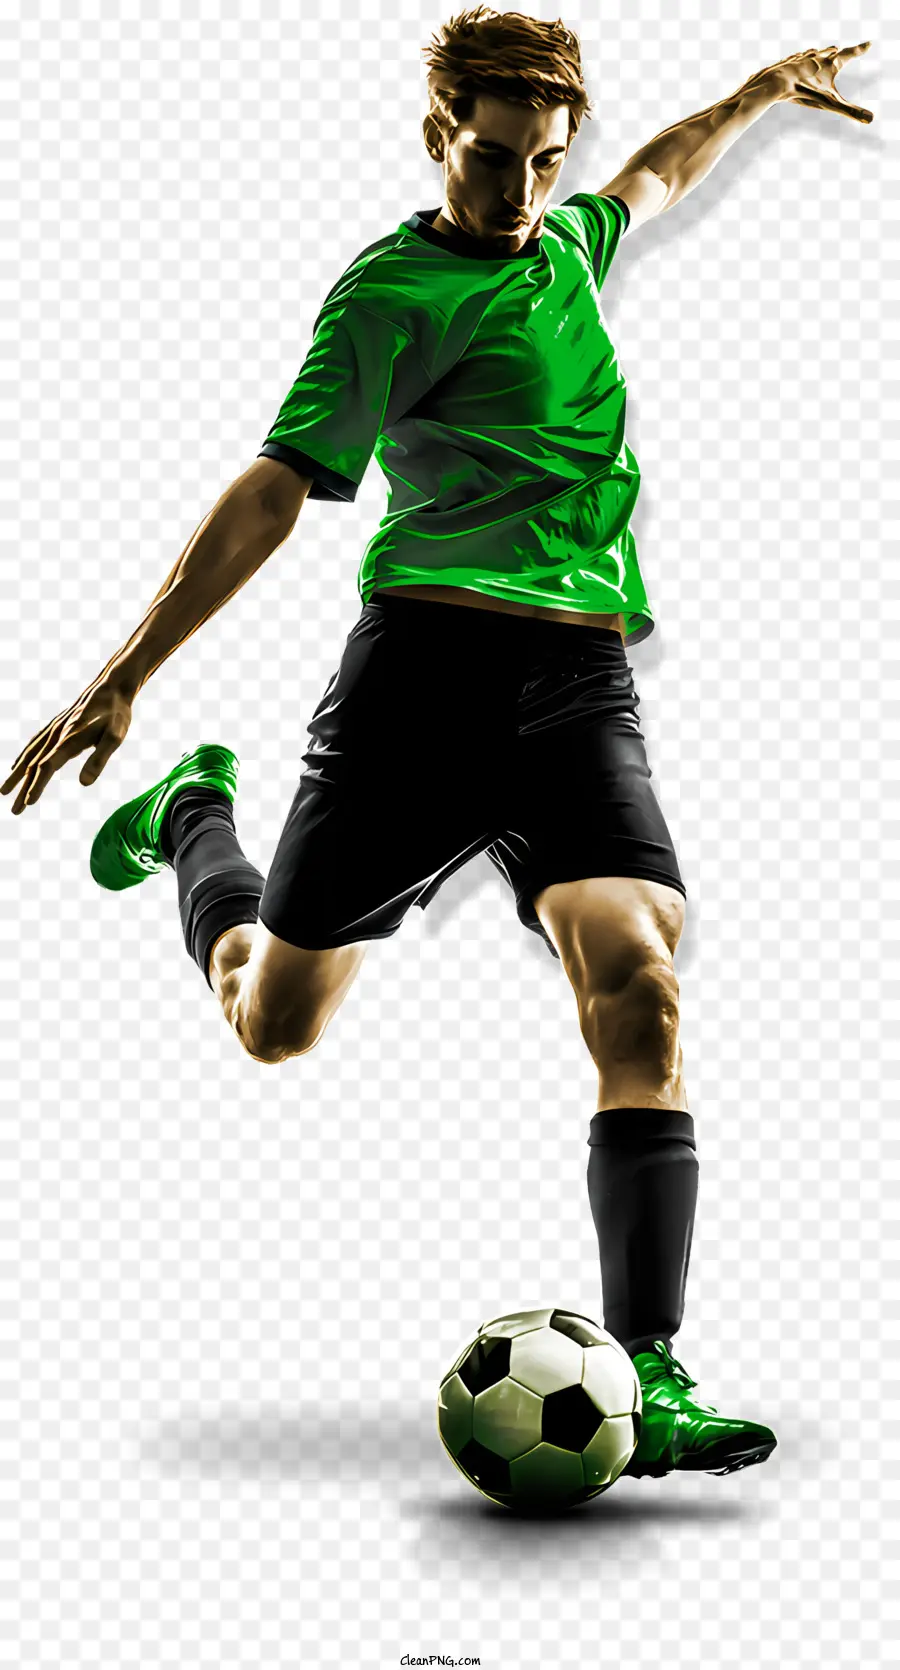 atleta sportivo di calcio di calcio di calcio - Uomo che calcia il pallone da calcio in camicia verde